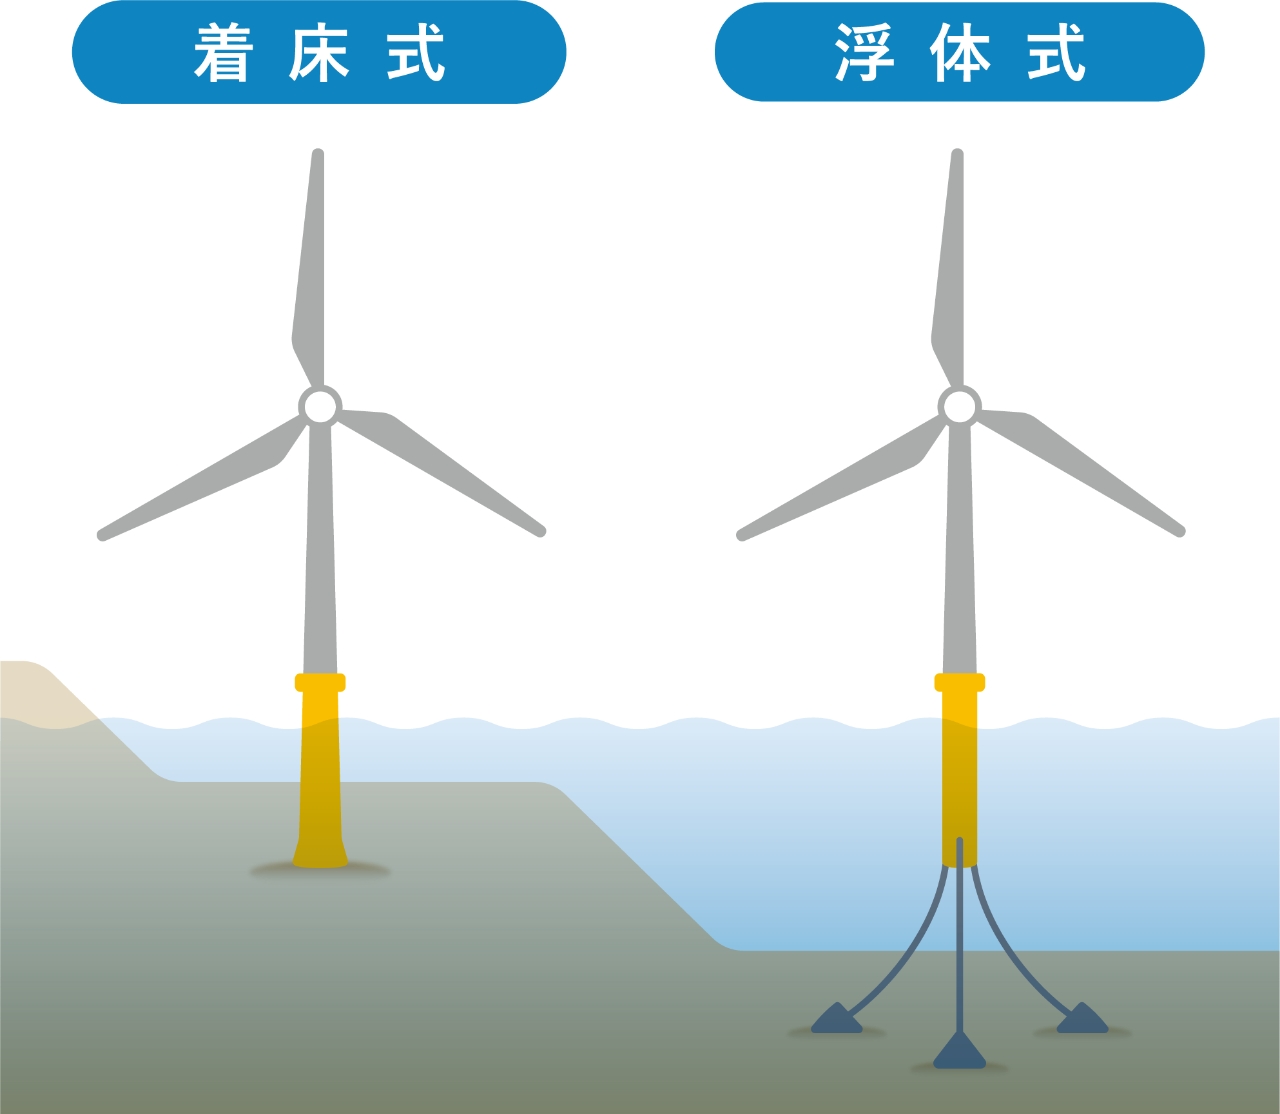 洋上風力発電の「着床式」と「浮体式」の図